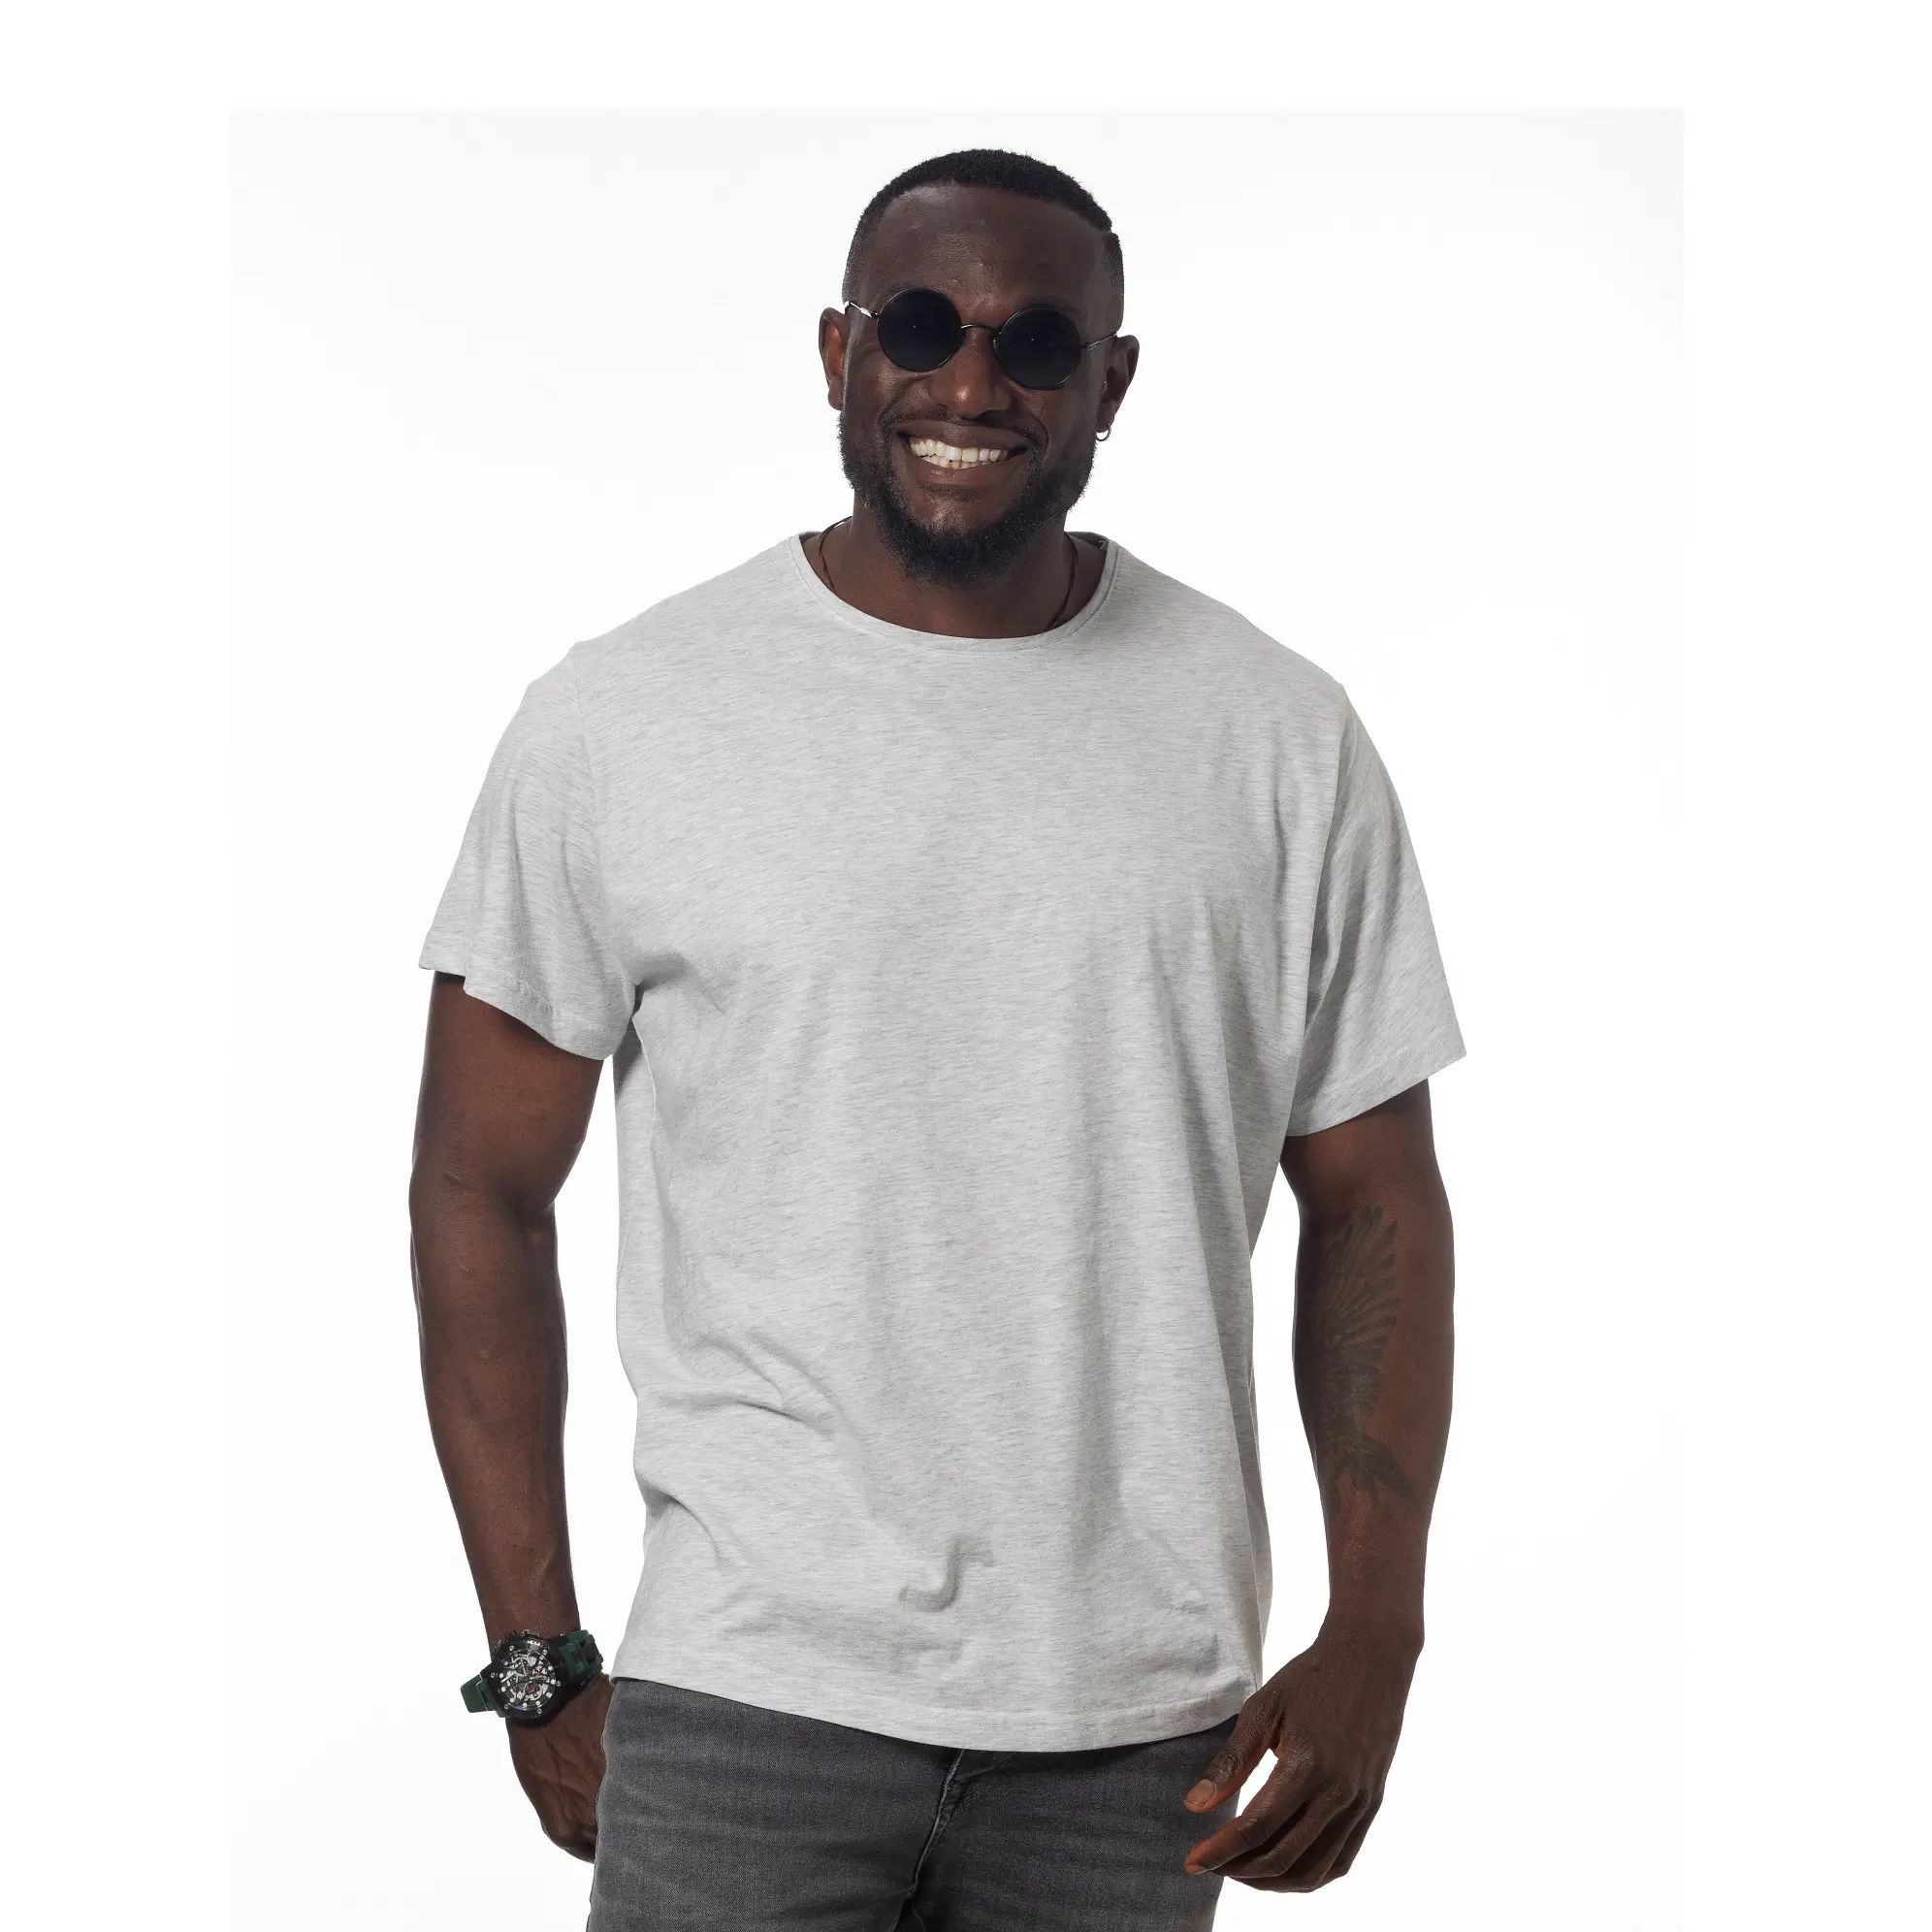 T shirt erkekler % 100% pamuk için Grey2 renk ekip boyun özel baskılı ağır büyük boy Premium kalite türkiye'de yapılan